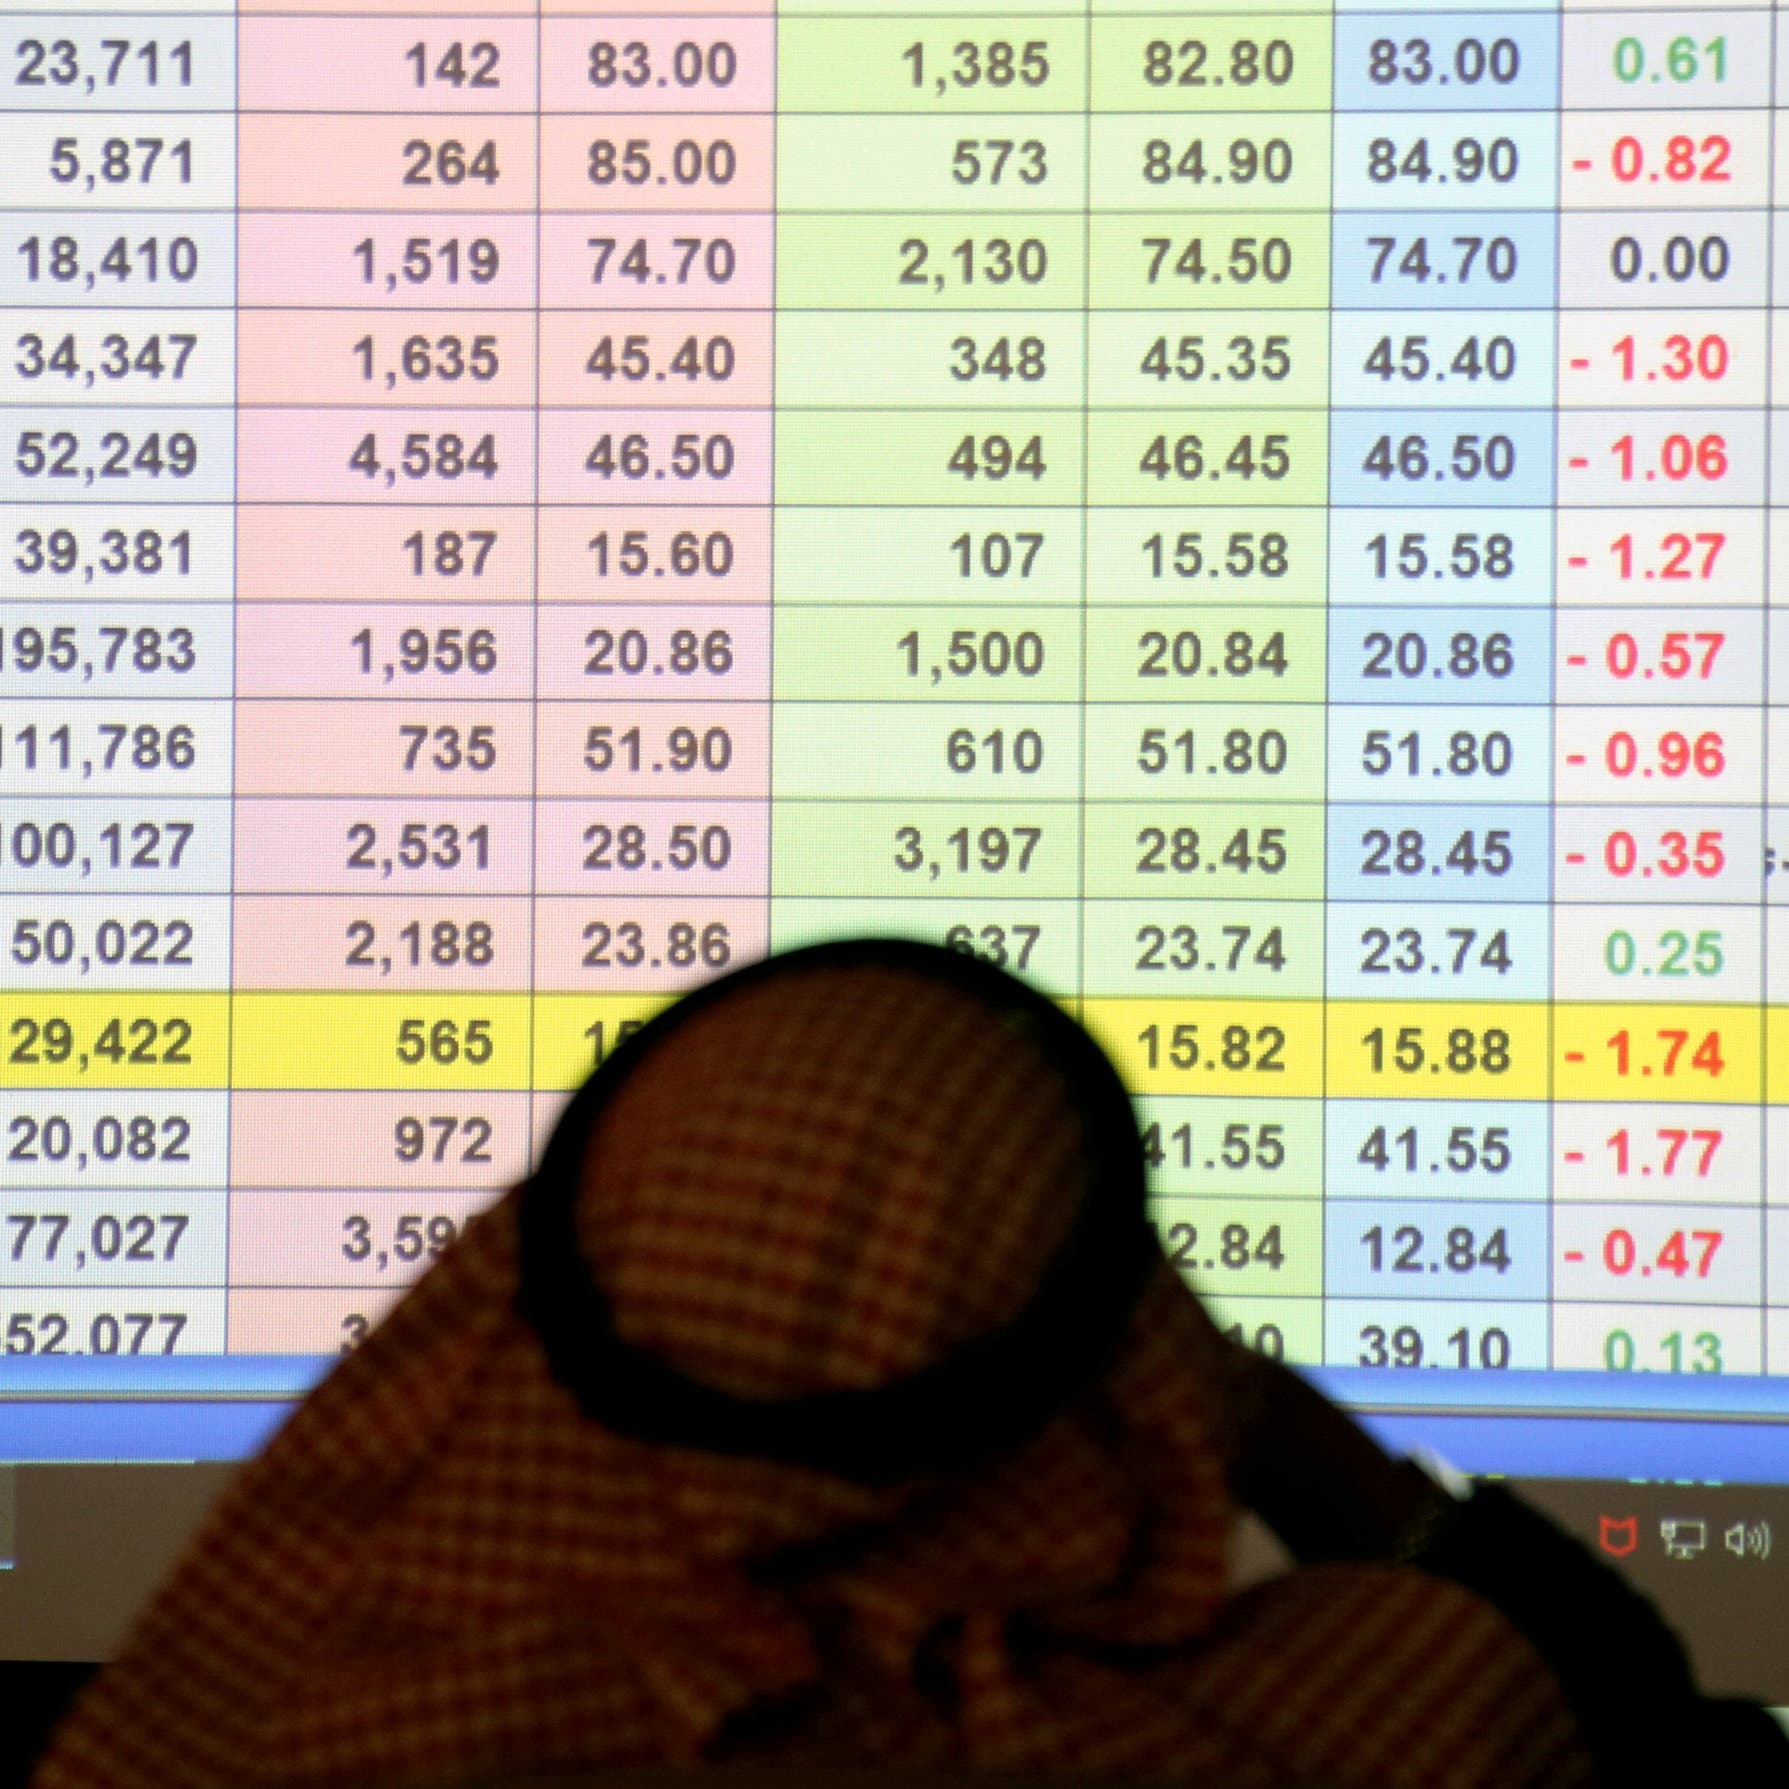 سوق الأسهم السعودية تهبط 0.8%.. وخبير: ضغوط الفائدة تؤثر على الأداء